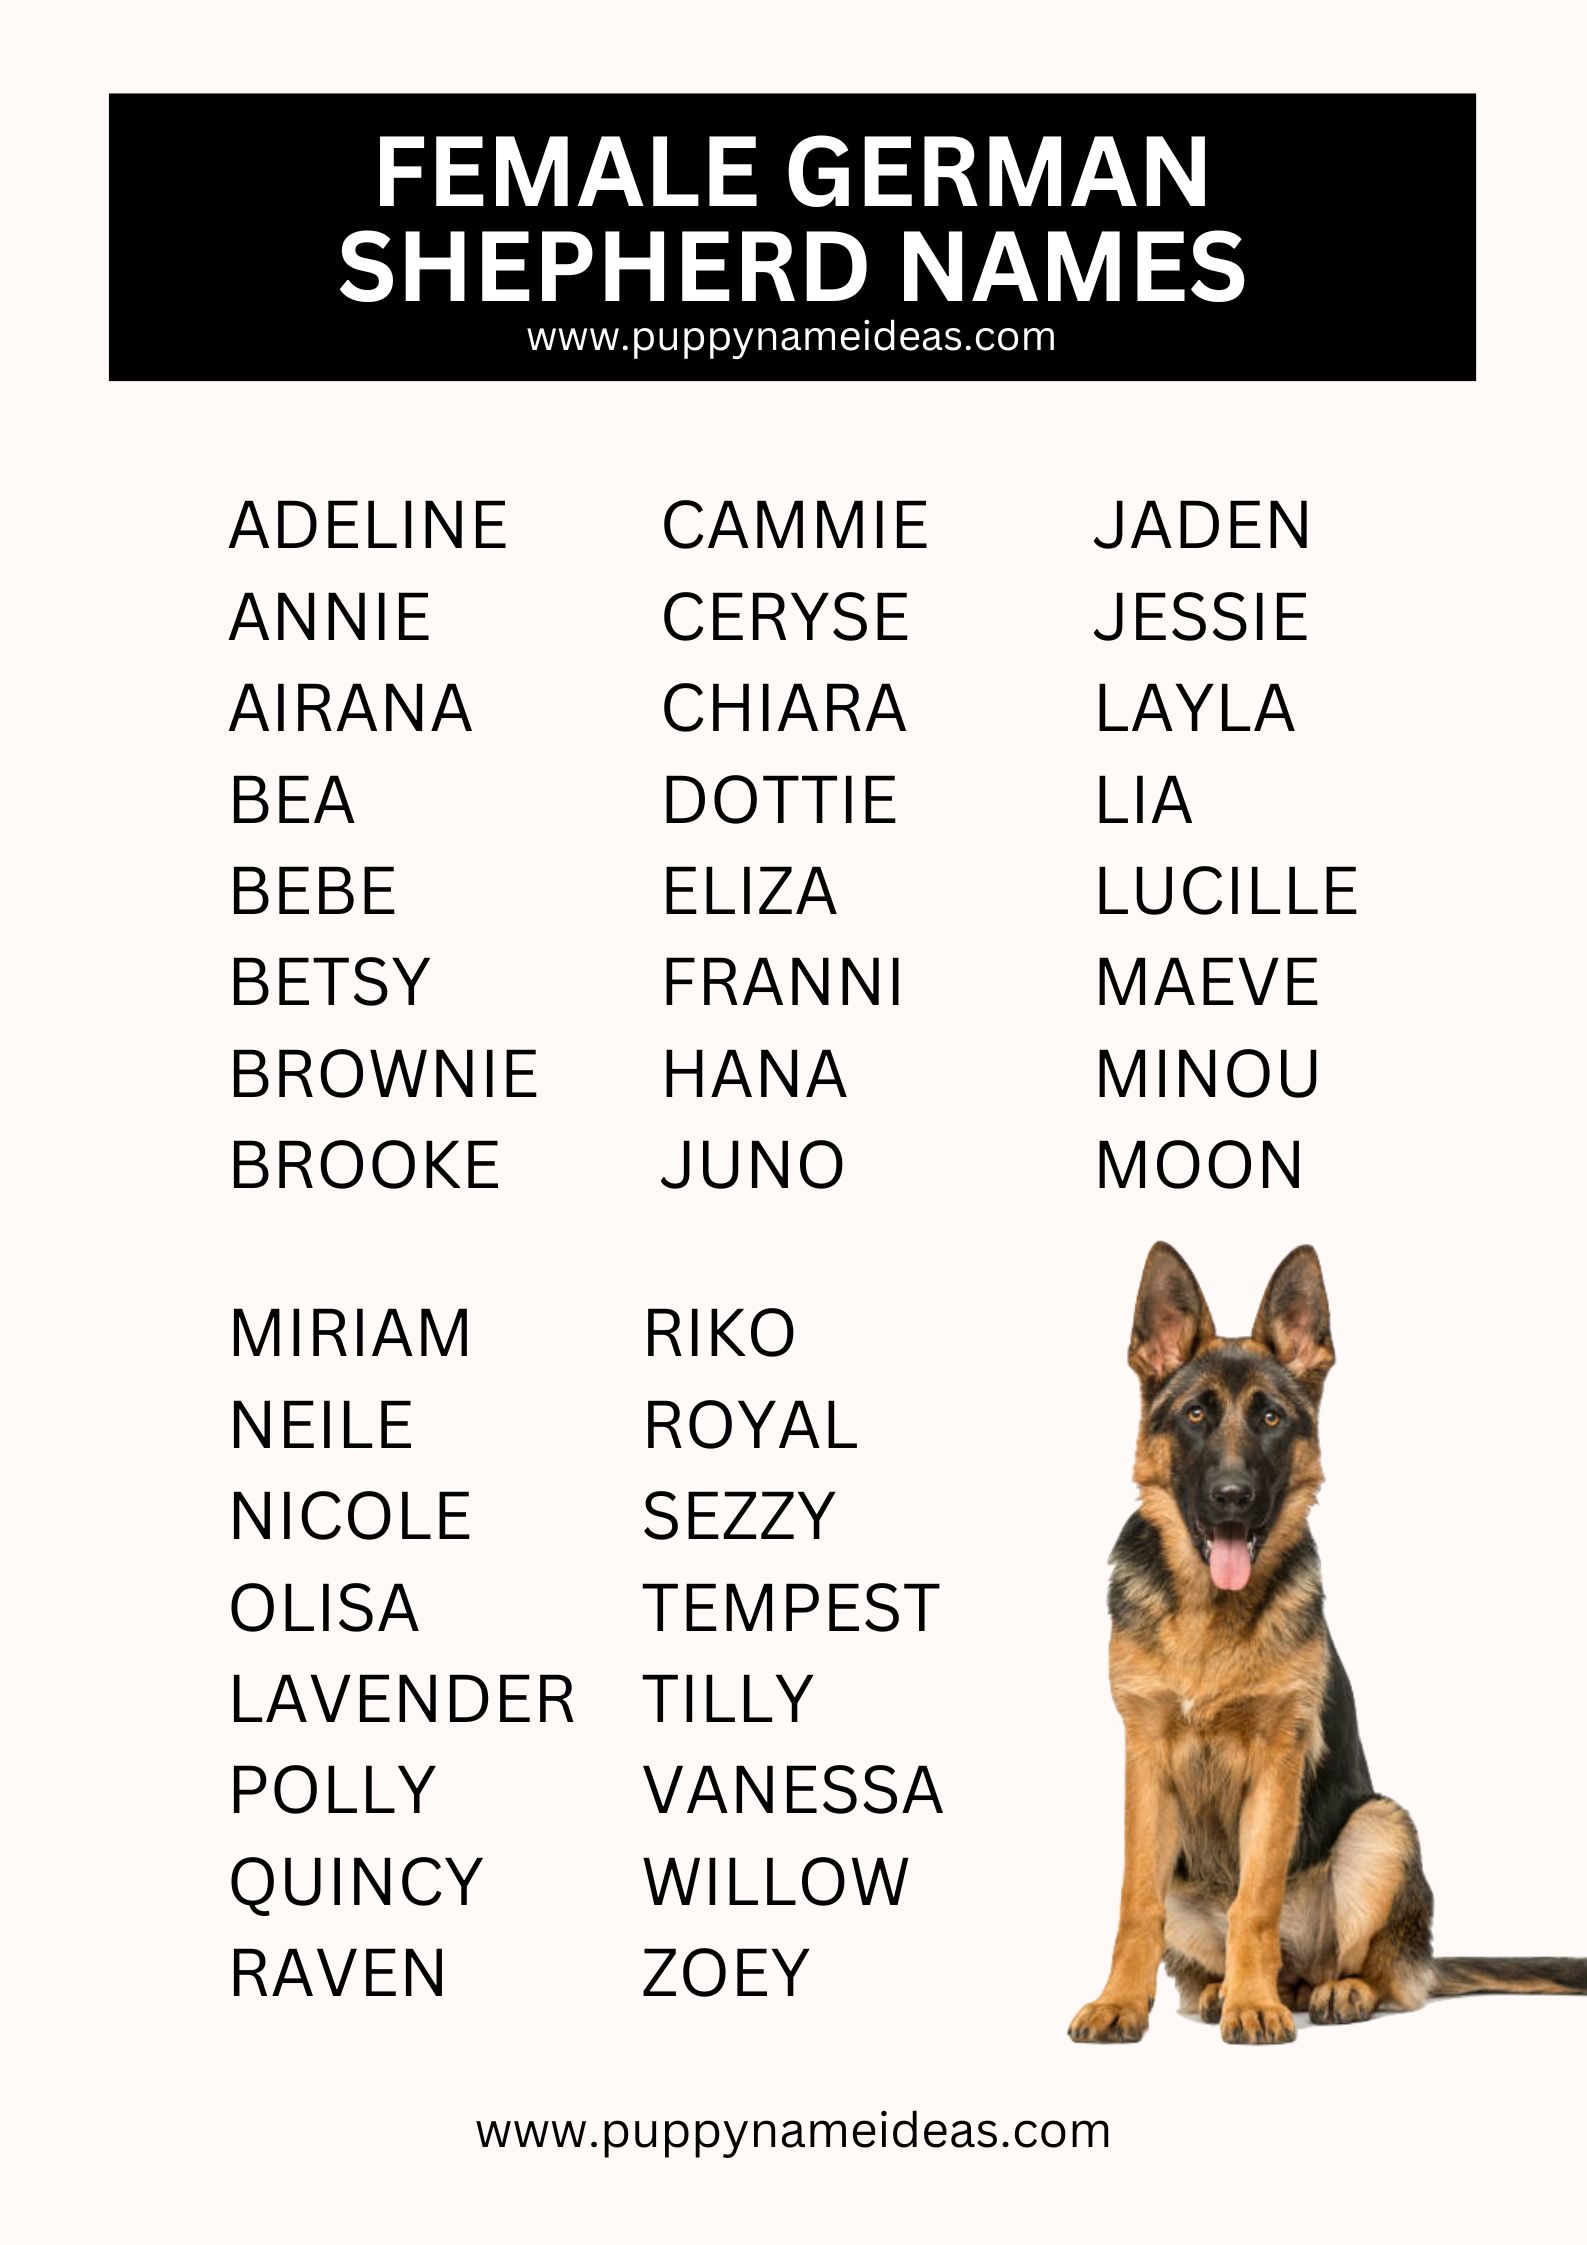 List Of Female German Shepherd Names